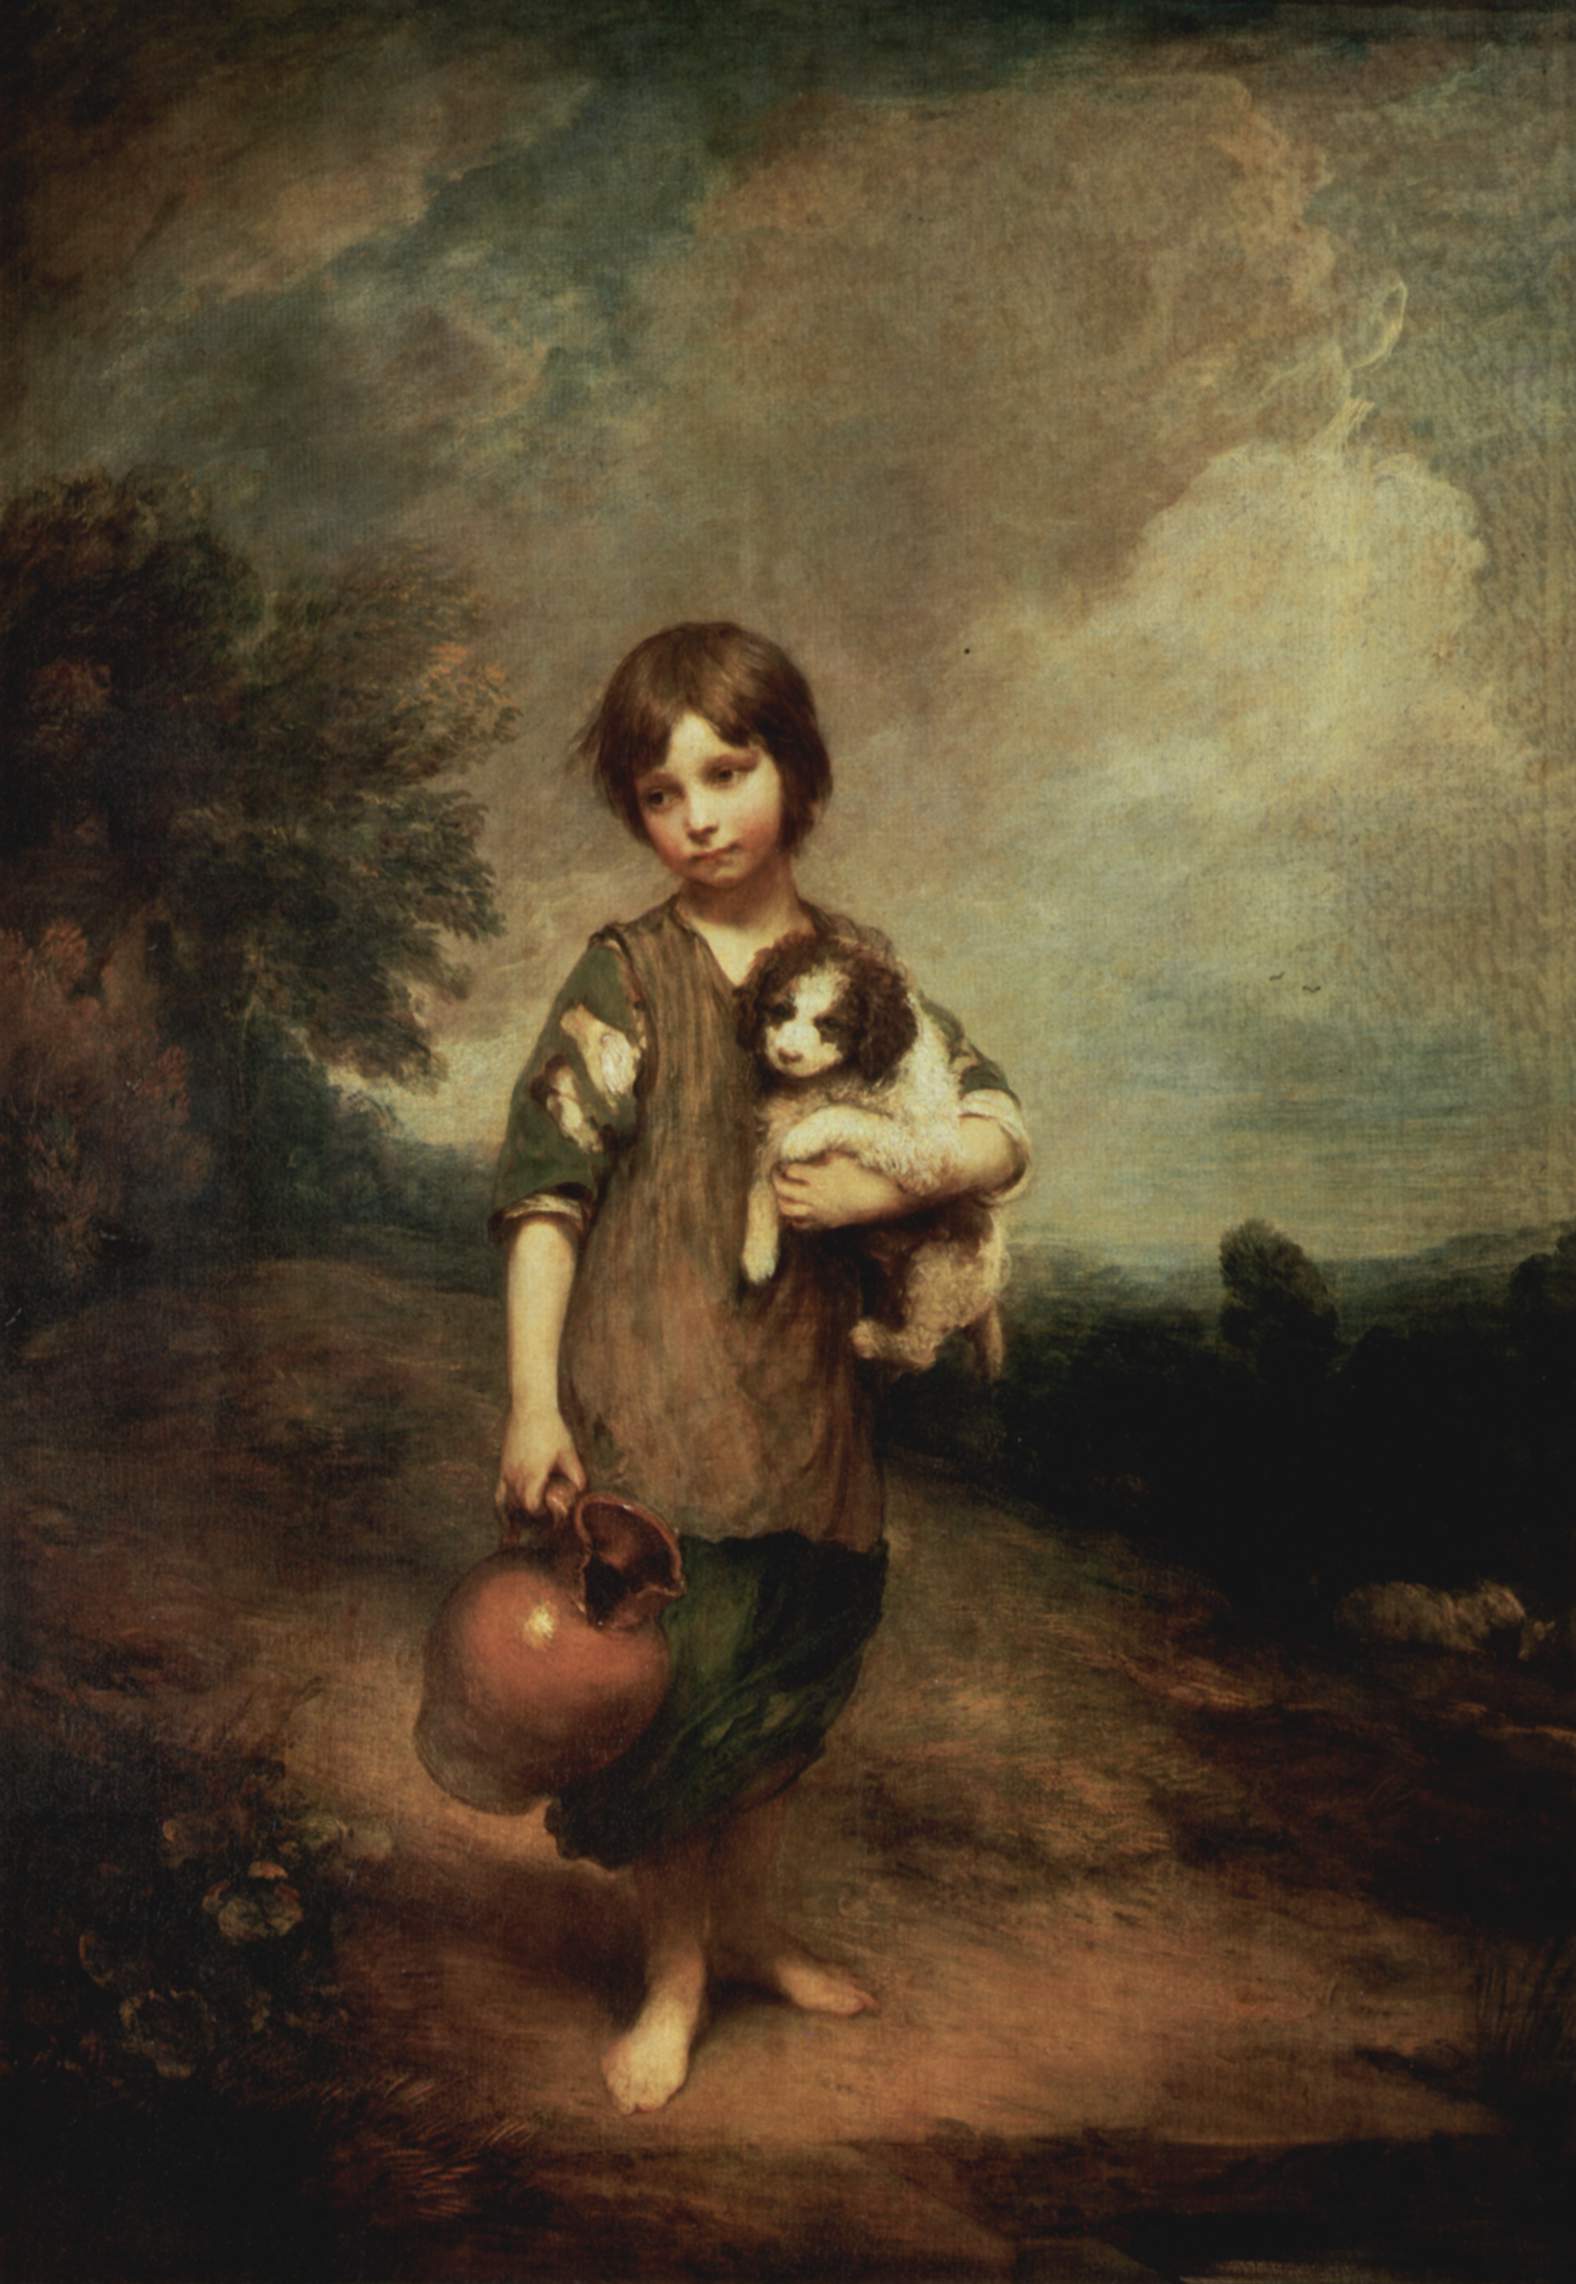 Thomas Gainsborough - A peasant girl with dog and jug